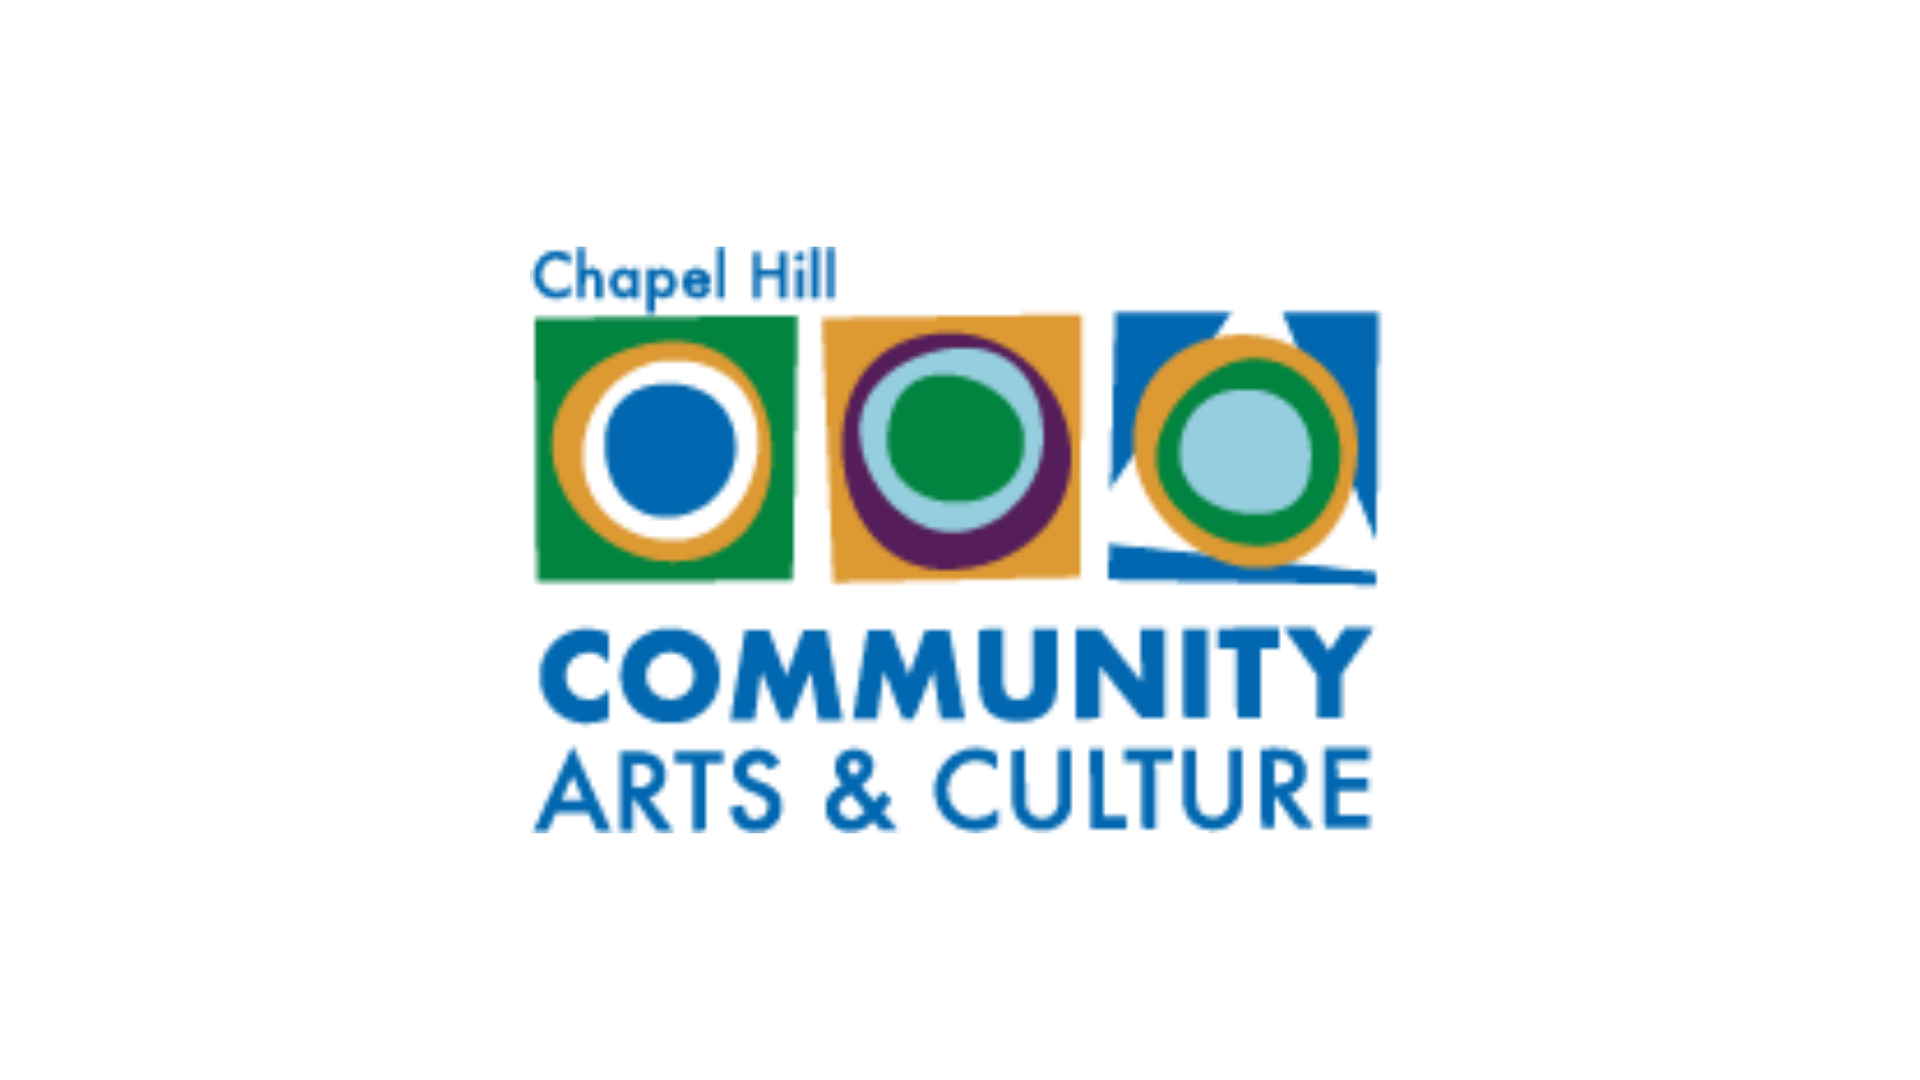 Chapel Hill community arts and culture logo